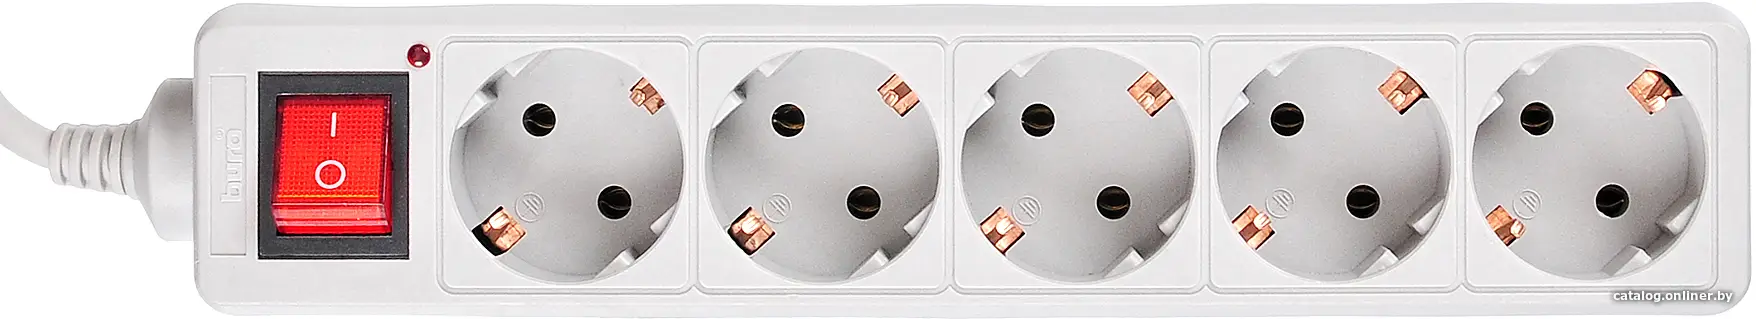 Купить Сетевой фильтр Buro 500SL-3-G 3м (5 розеток) серый (пакет ПЭ), цена, опт и розница